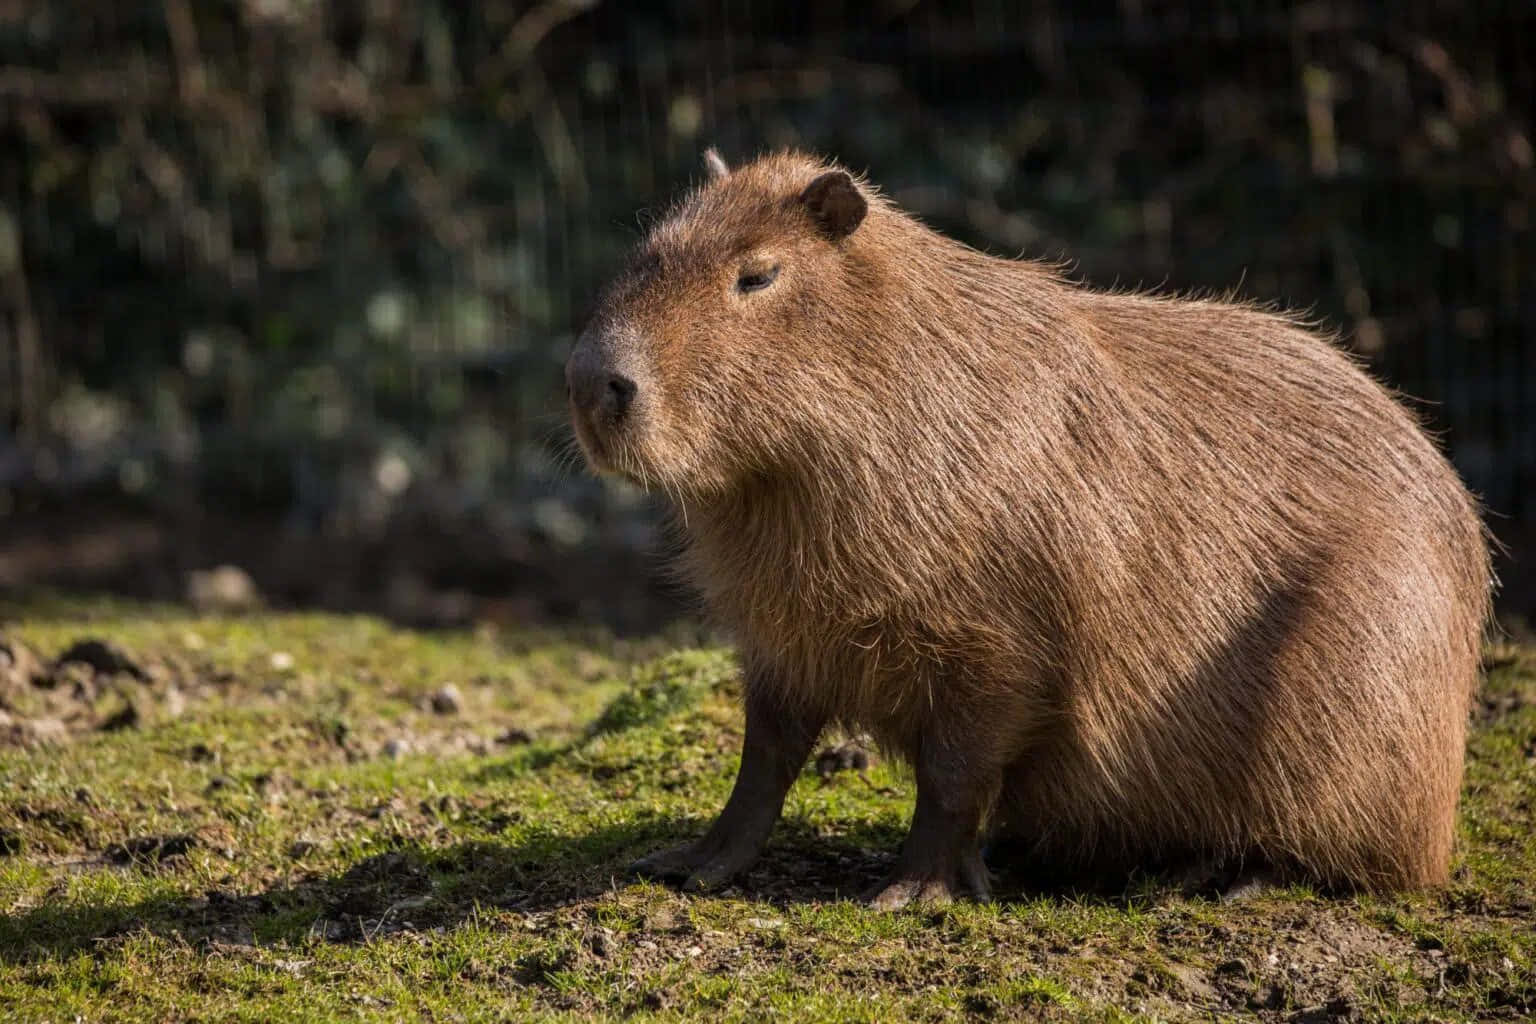 "A Baby Capybara Enjoys a Meal"